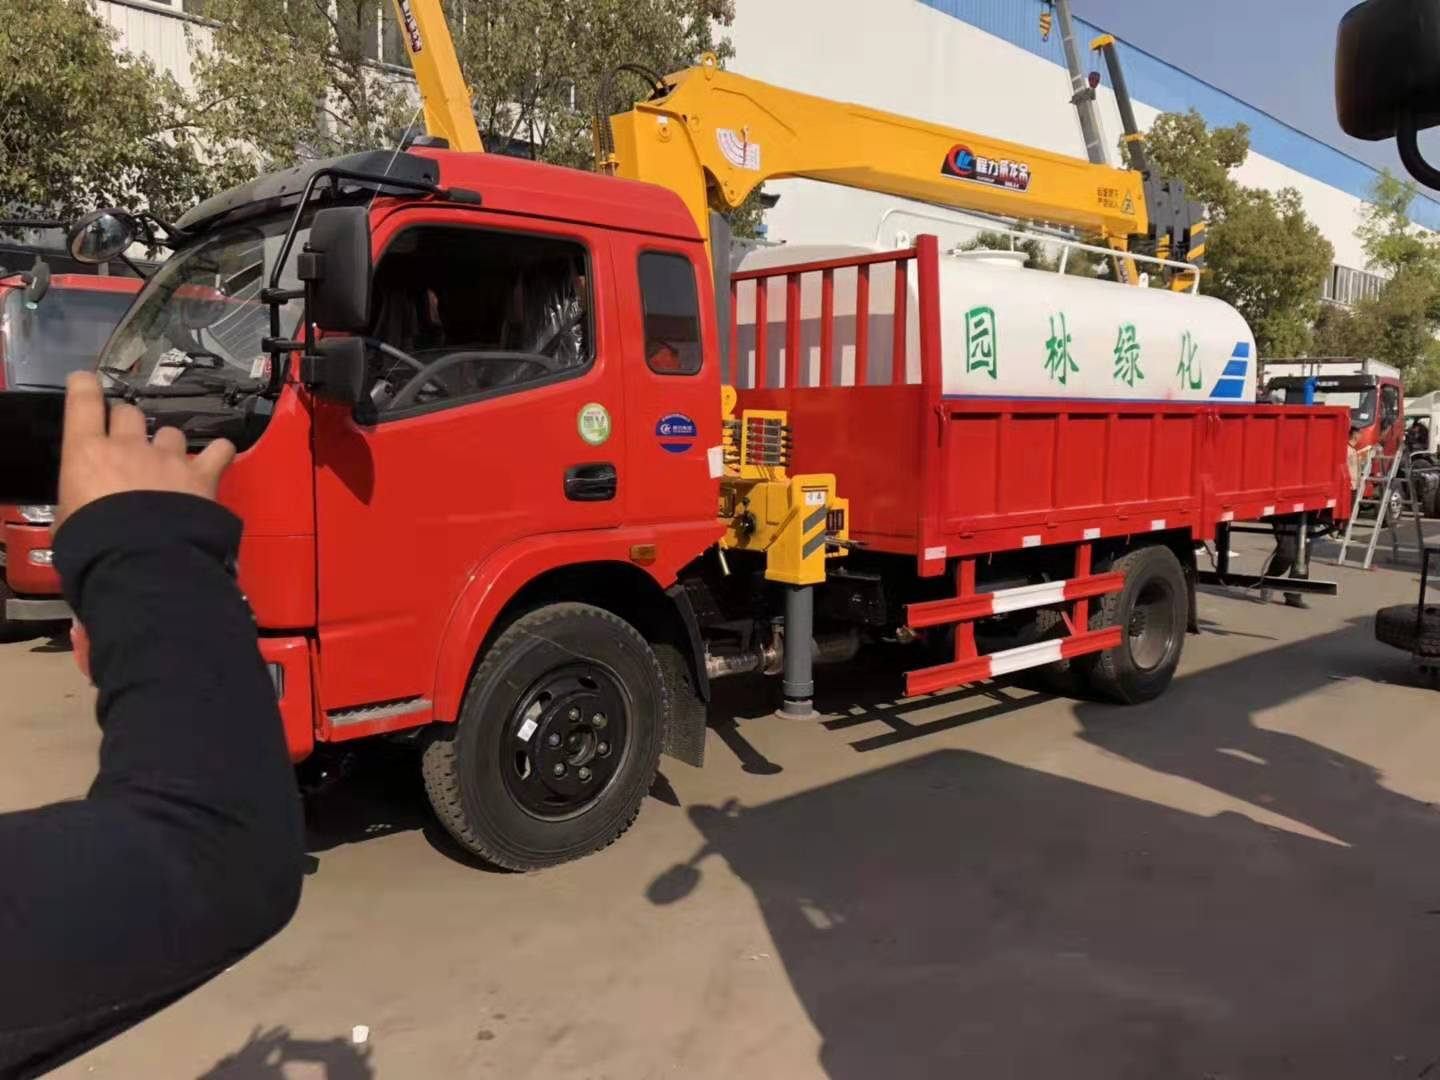 东风福瑞卡锡柴140马力上装程力6.3吨吊机加装水罐 洒水 ()